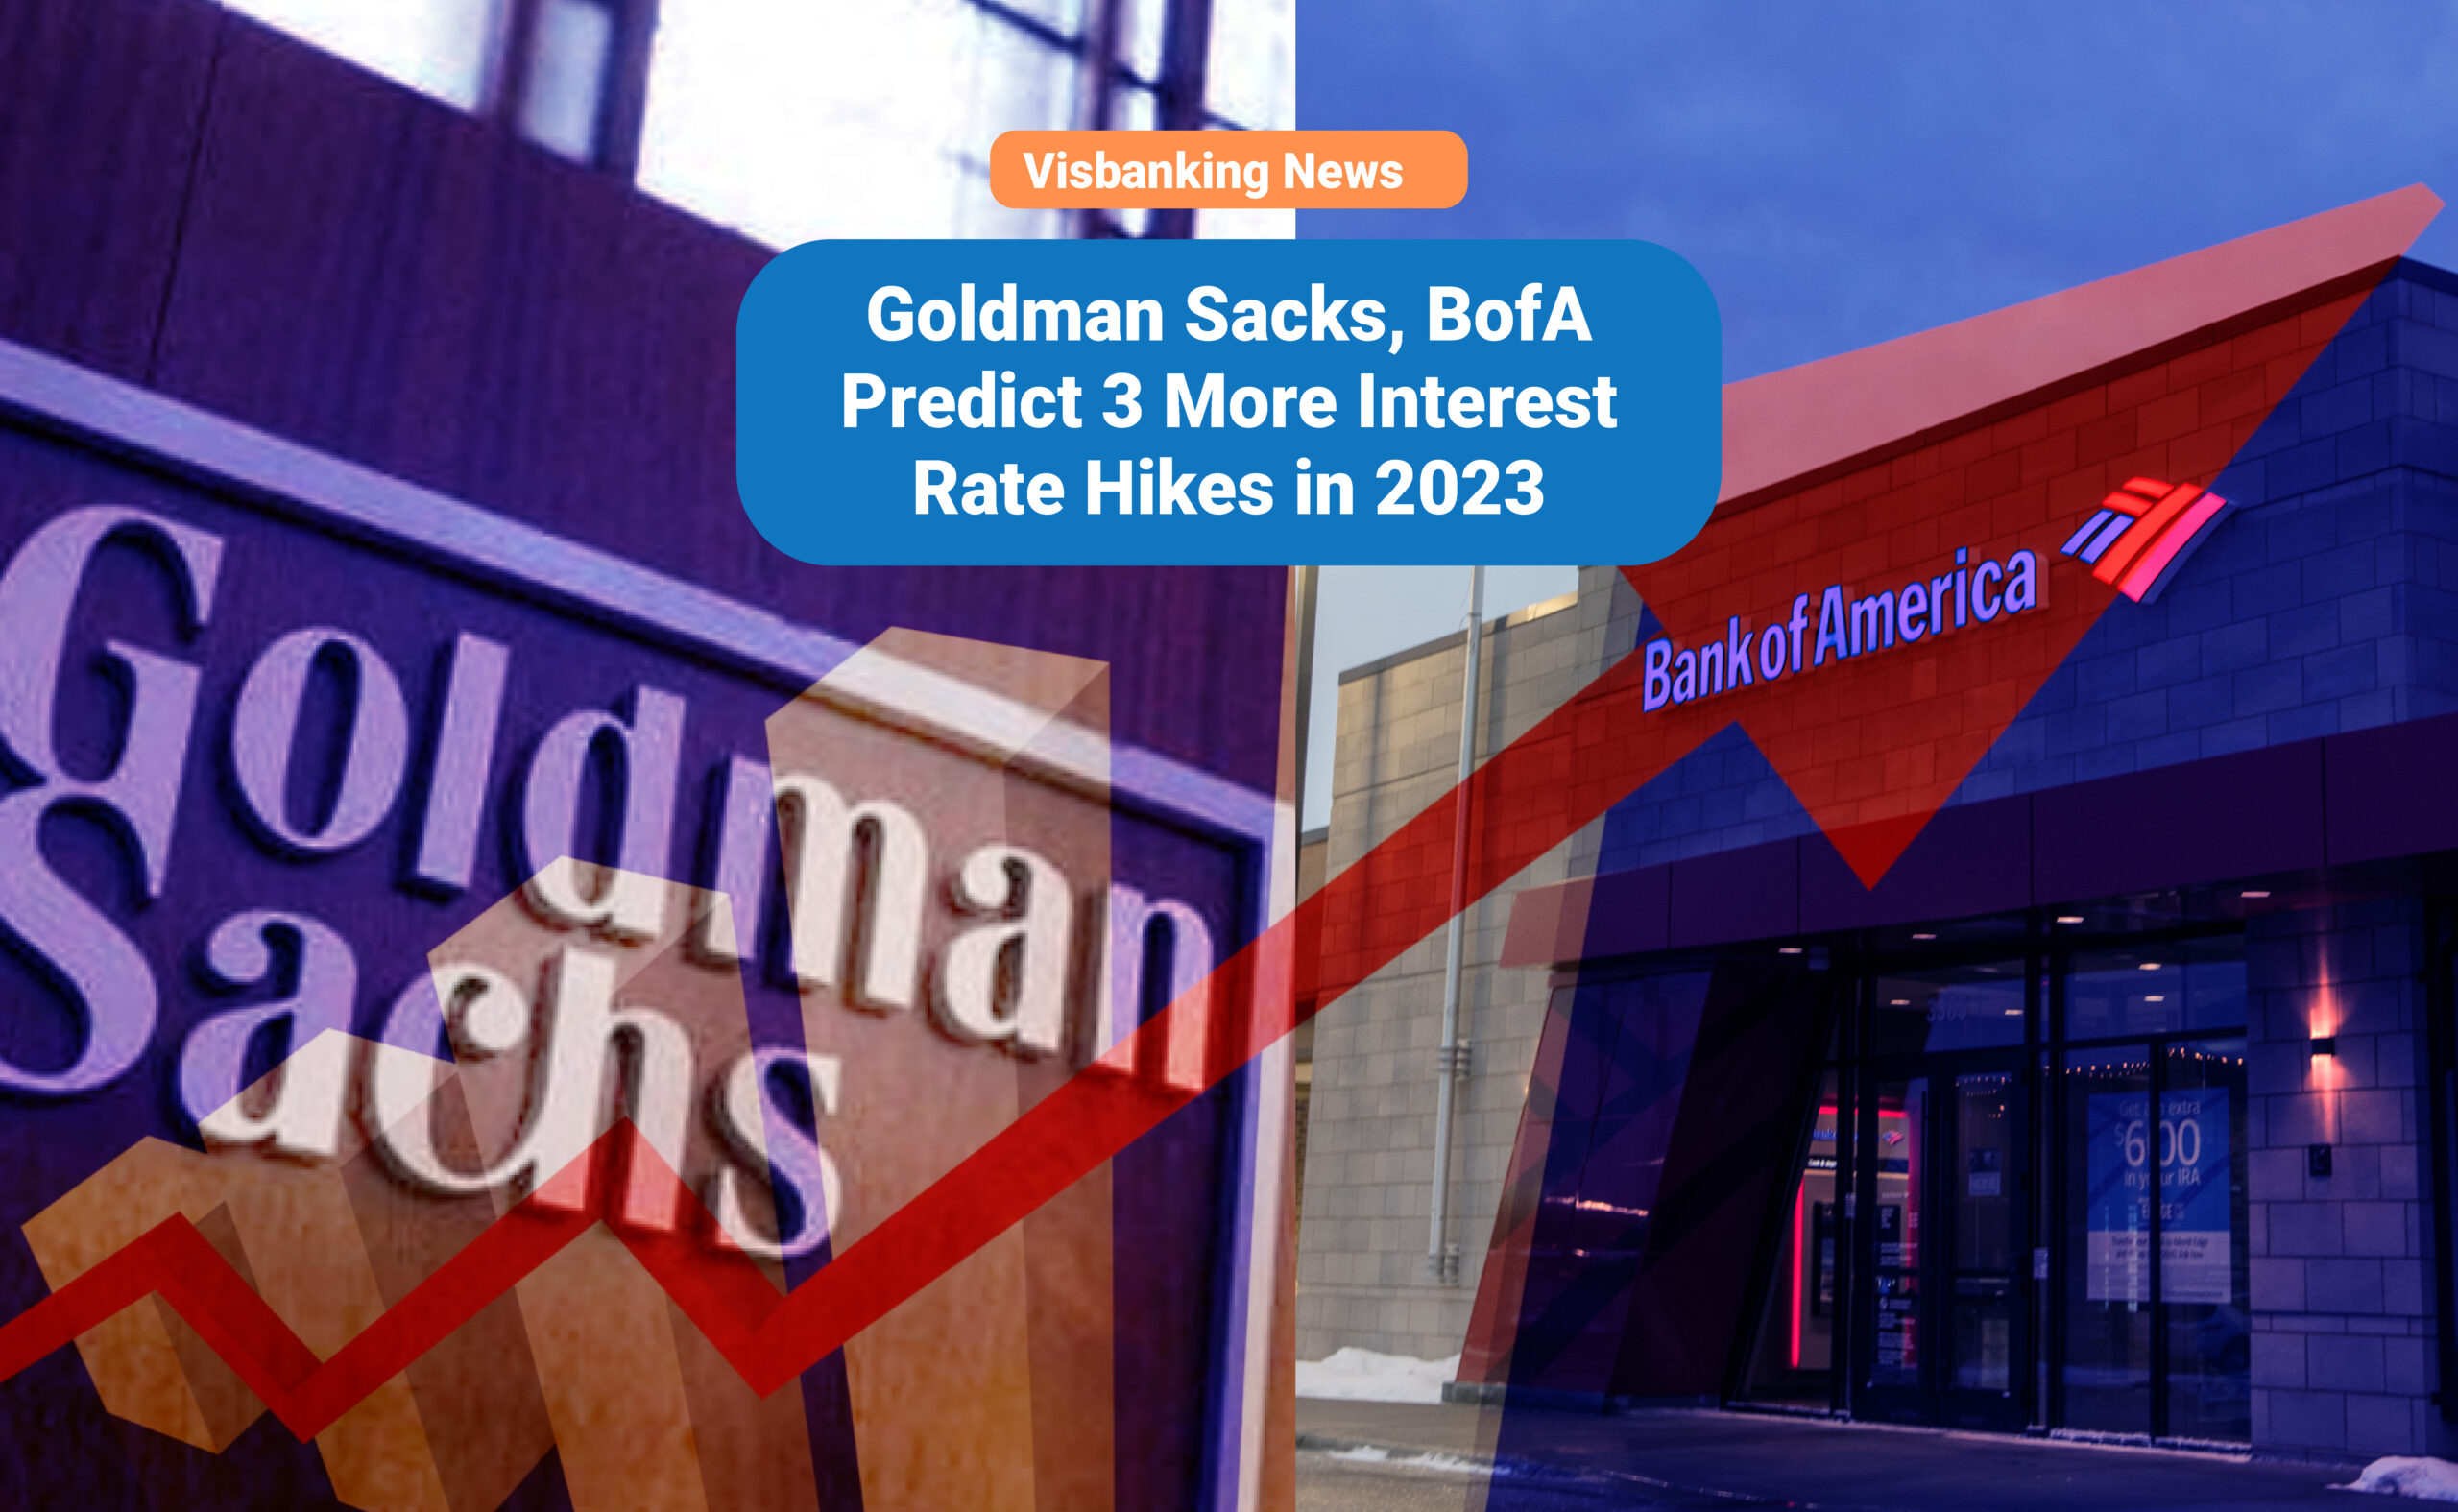 Goldman Sacks, BofA Predict 3 More Interest Rate Hikes in 2023